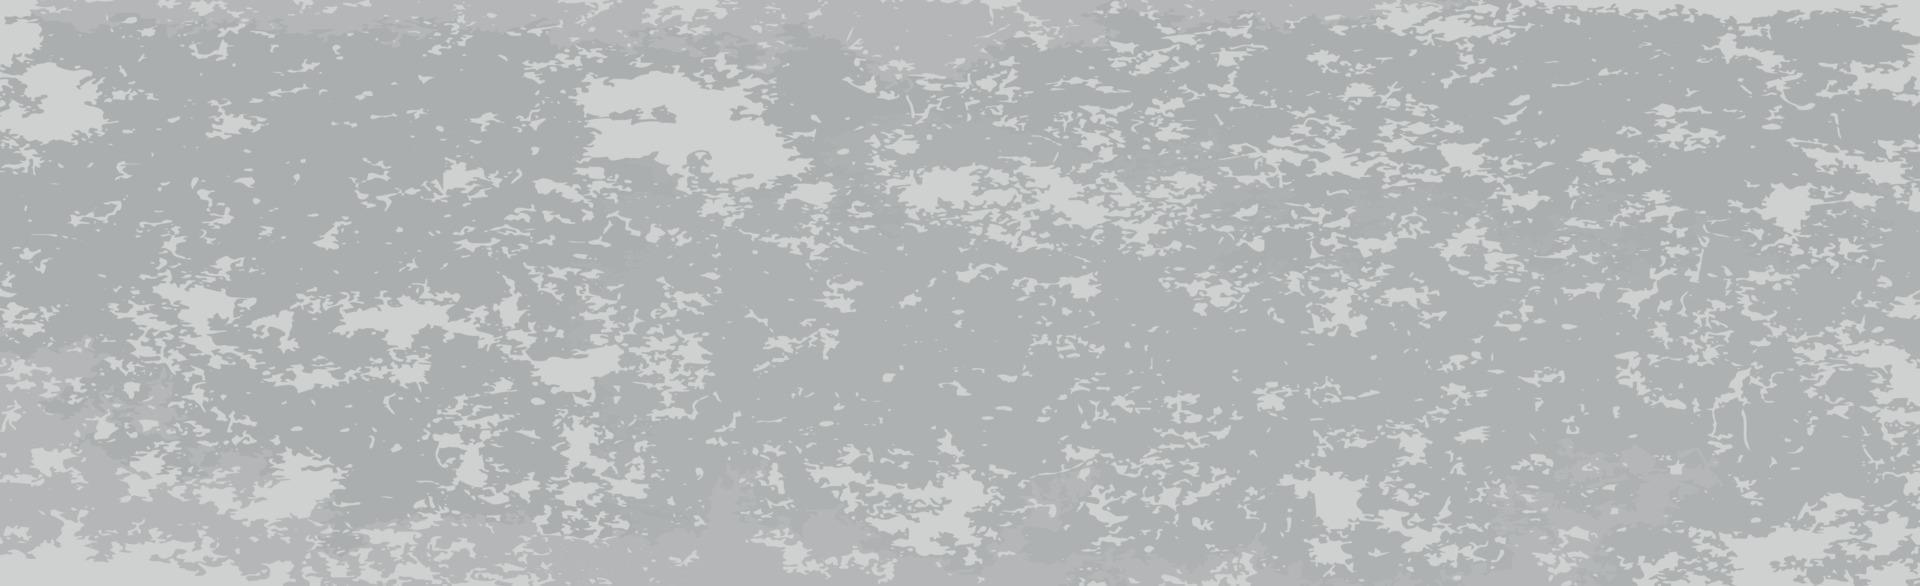 fondo realista, pintura descascarada blanco - gris - vector